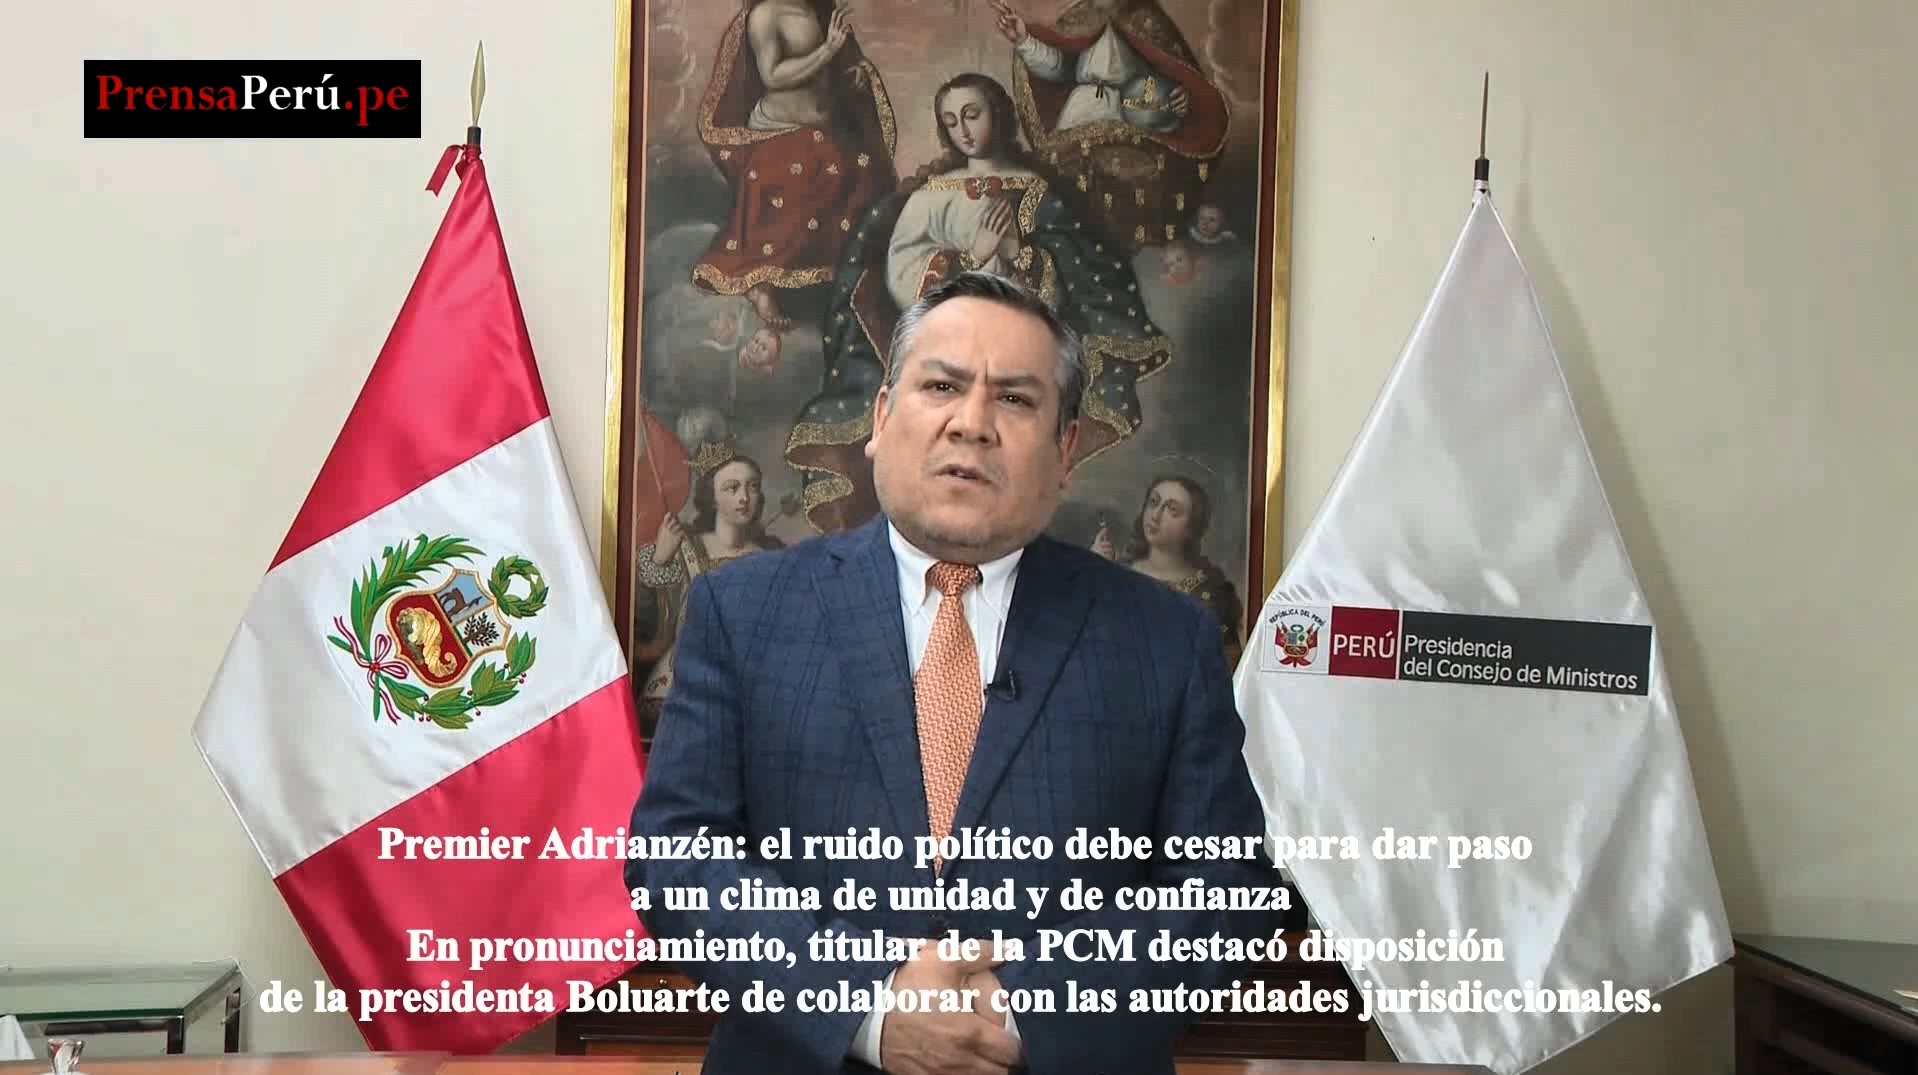 En mensaje a la Nación, el Premier Gustavo Adrianzén: “El ruido político debe cesar para dar paso a un clima de unidad y de confianza”.